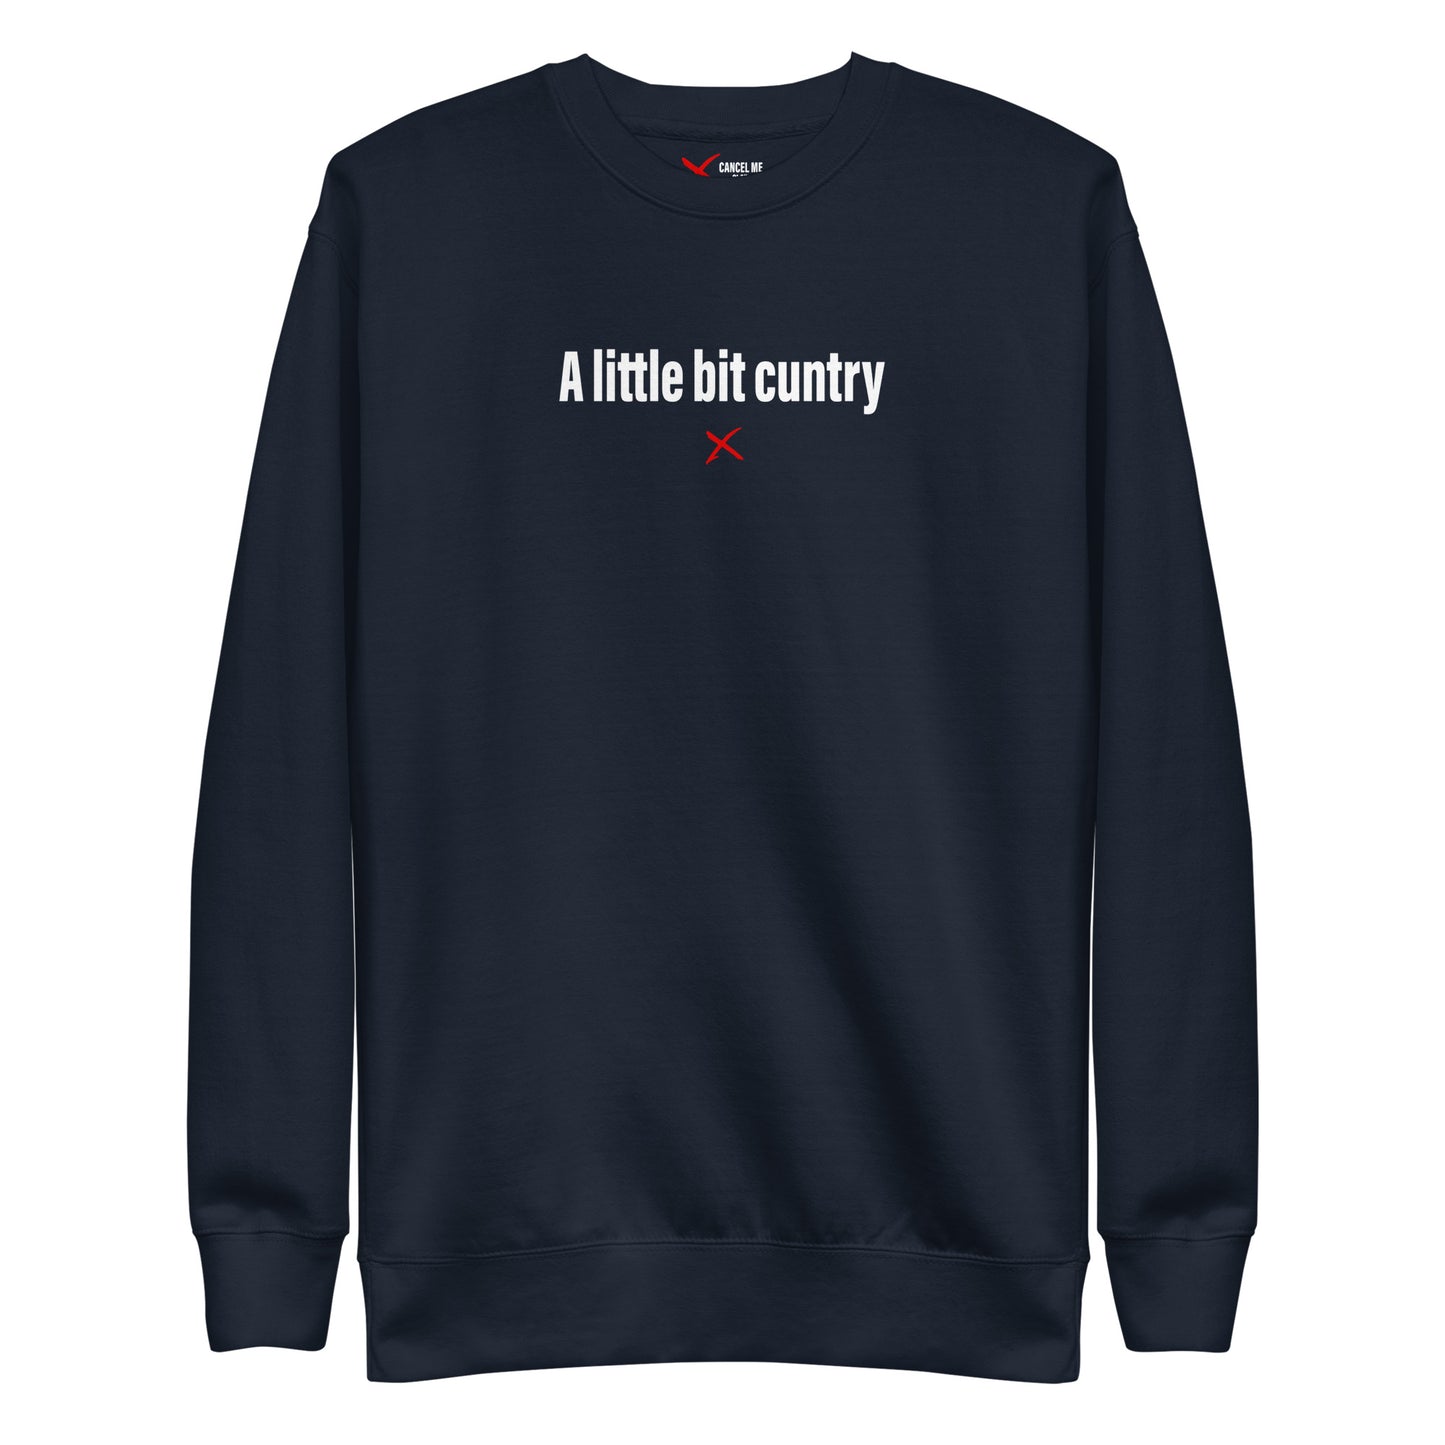 A little bit cuntry - Sweatshirt